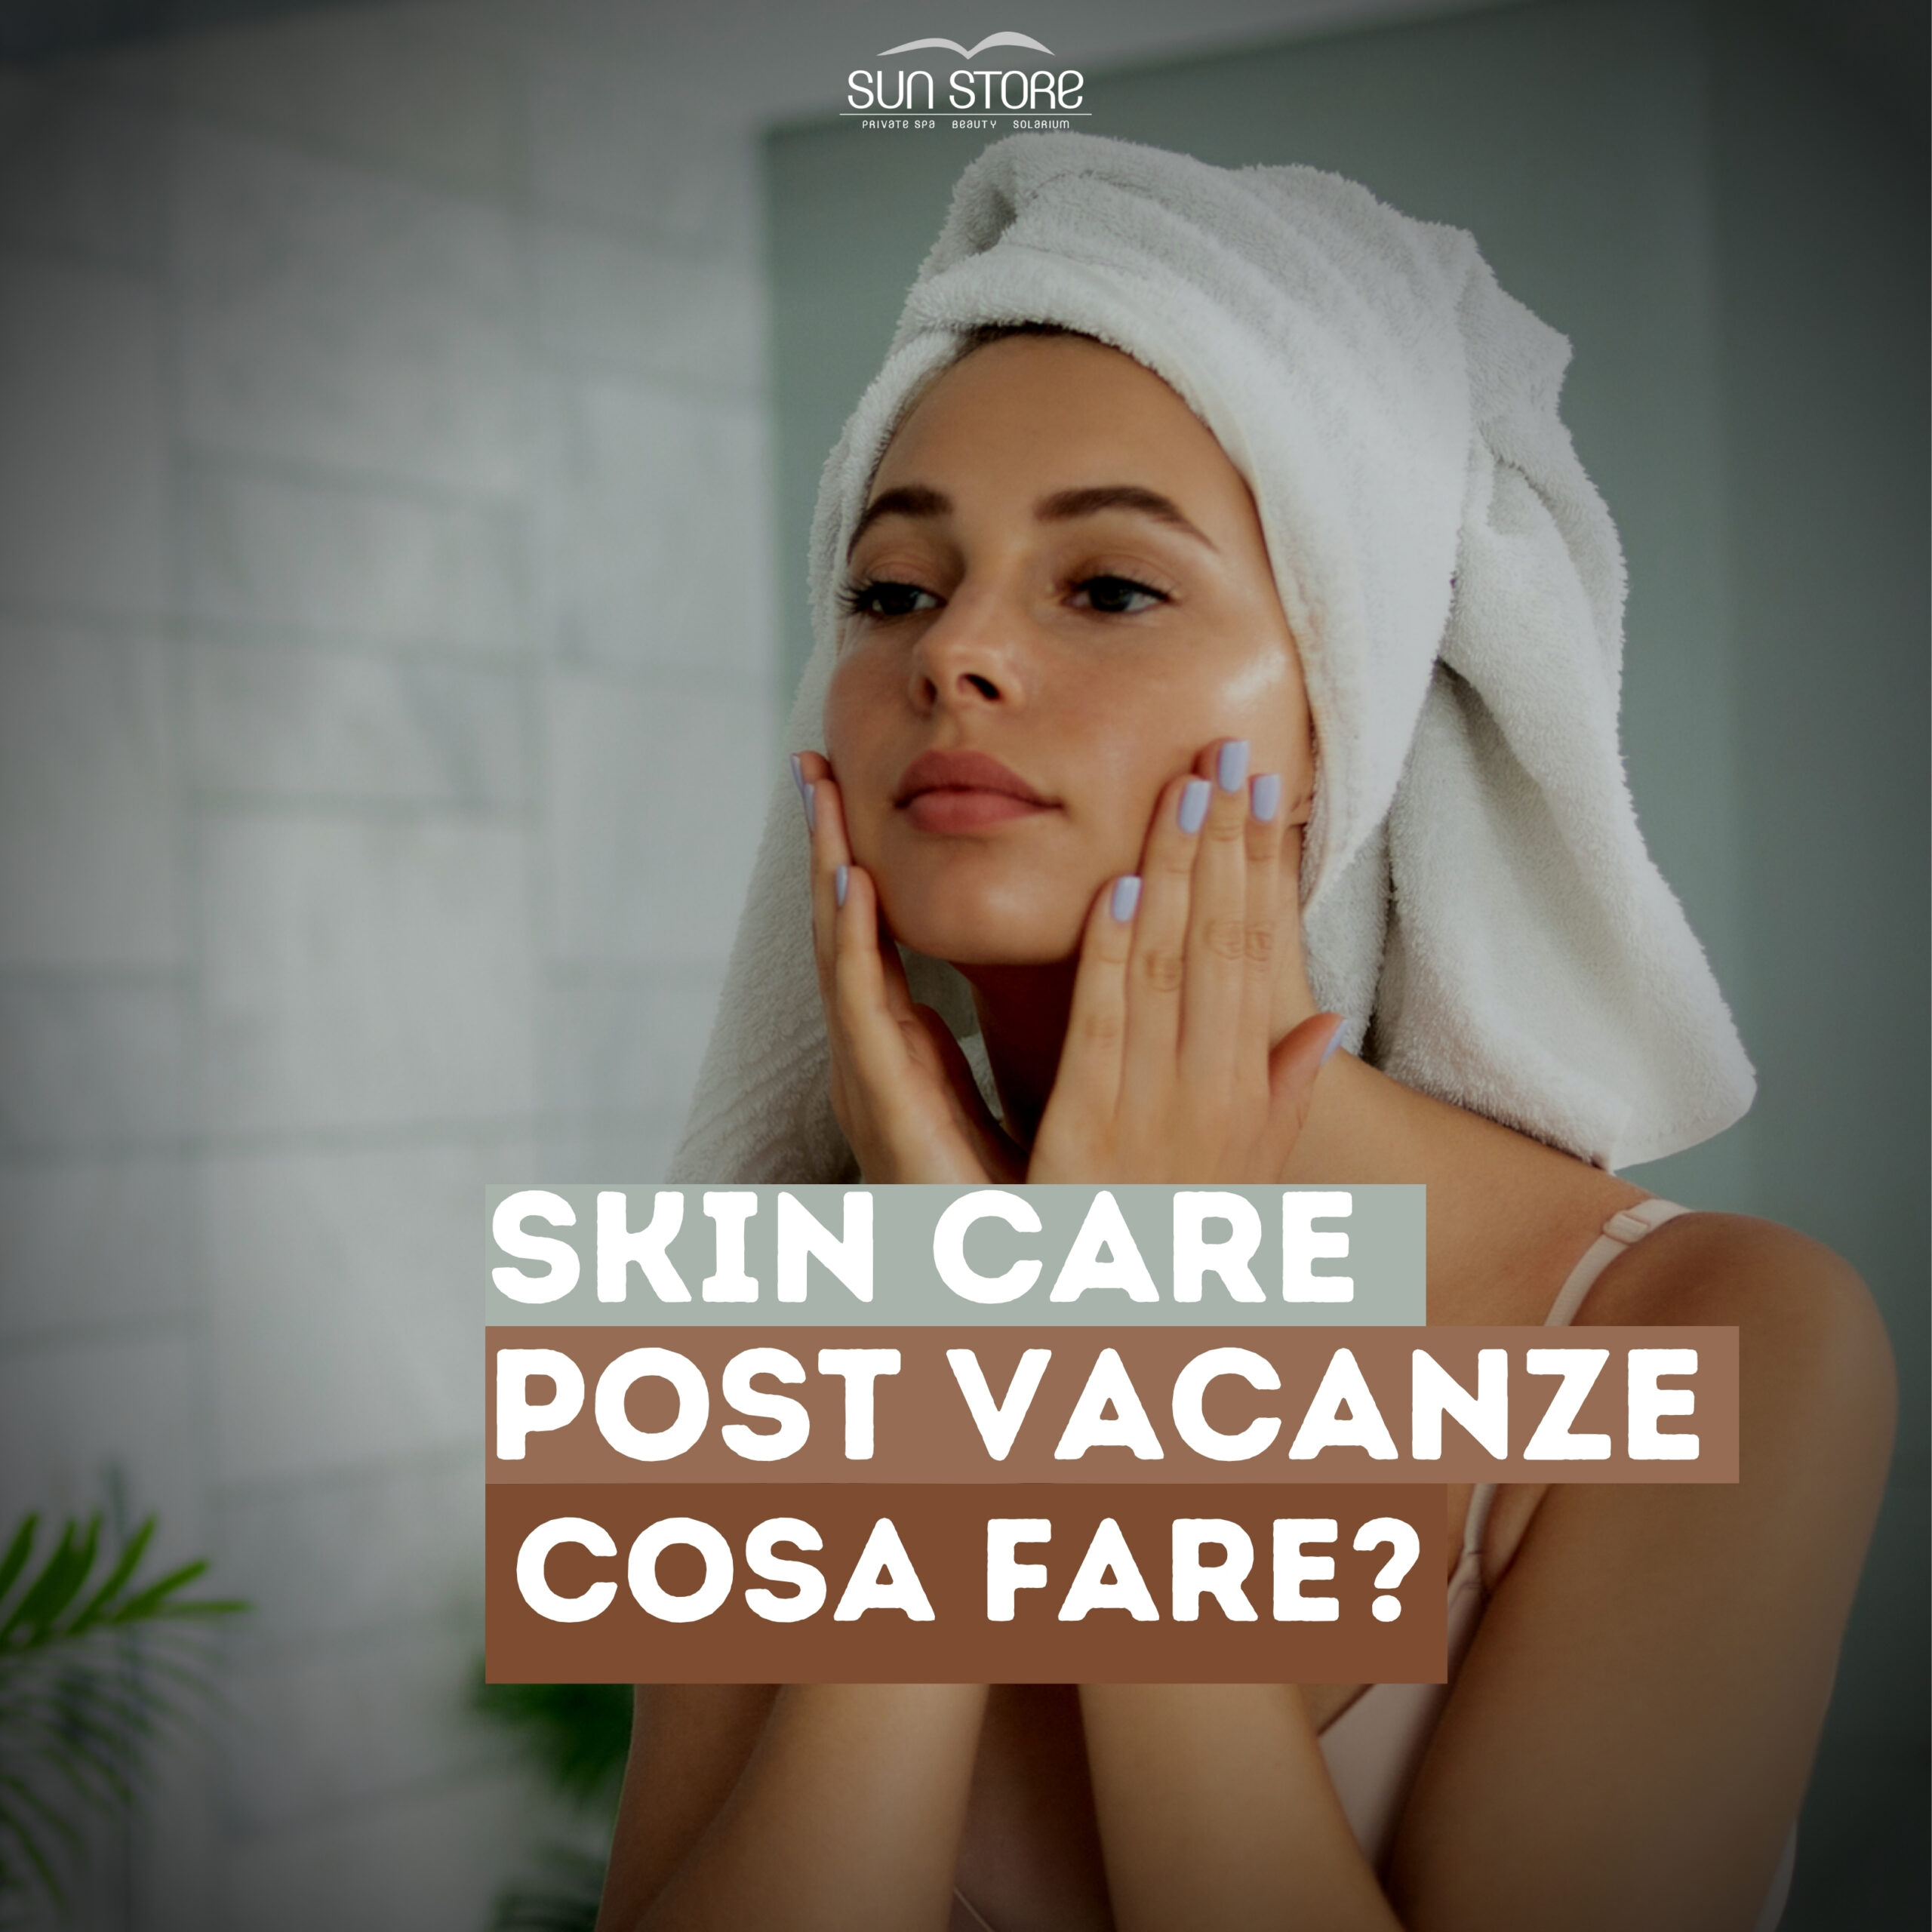 Skin care routine post vacanze